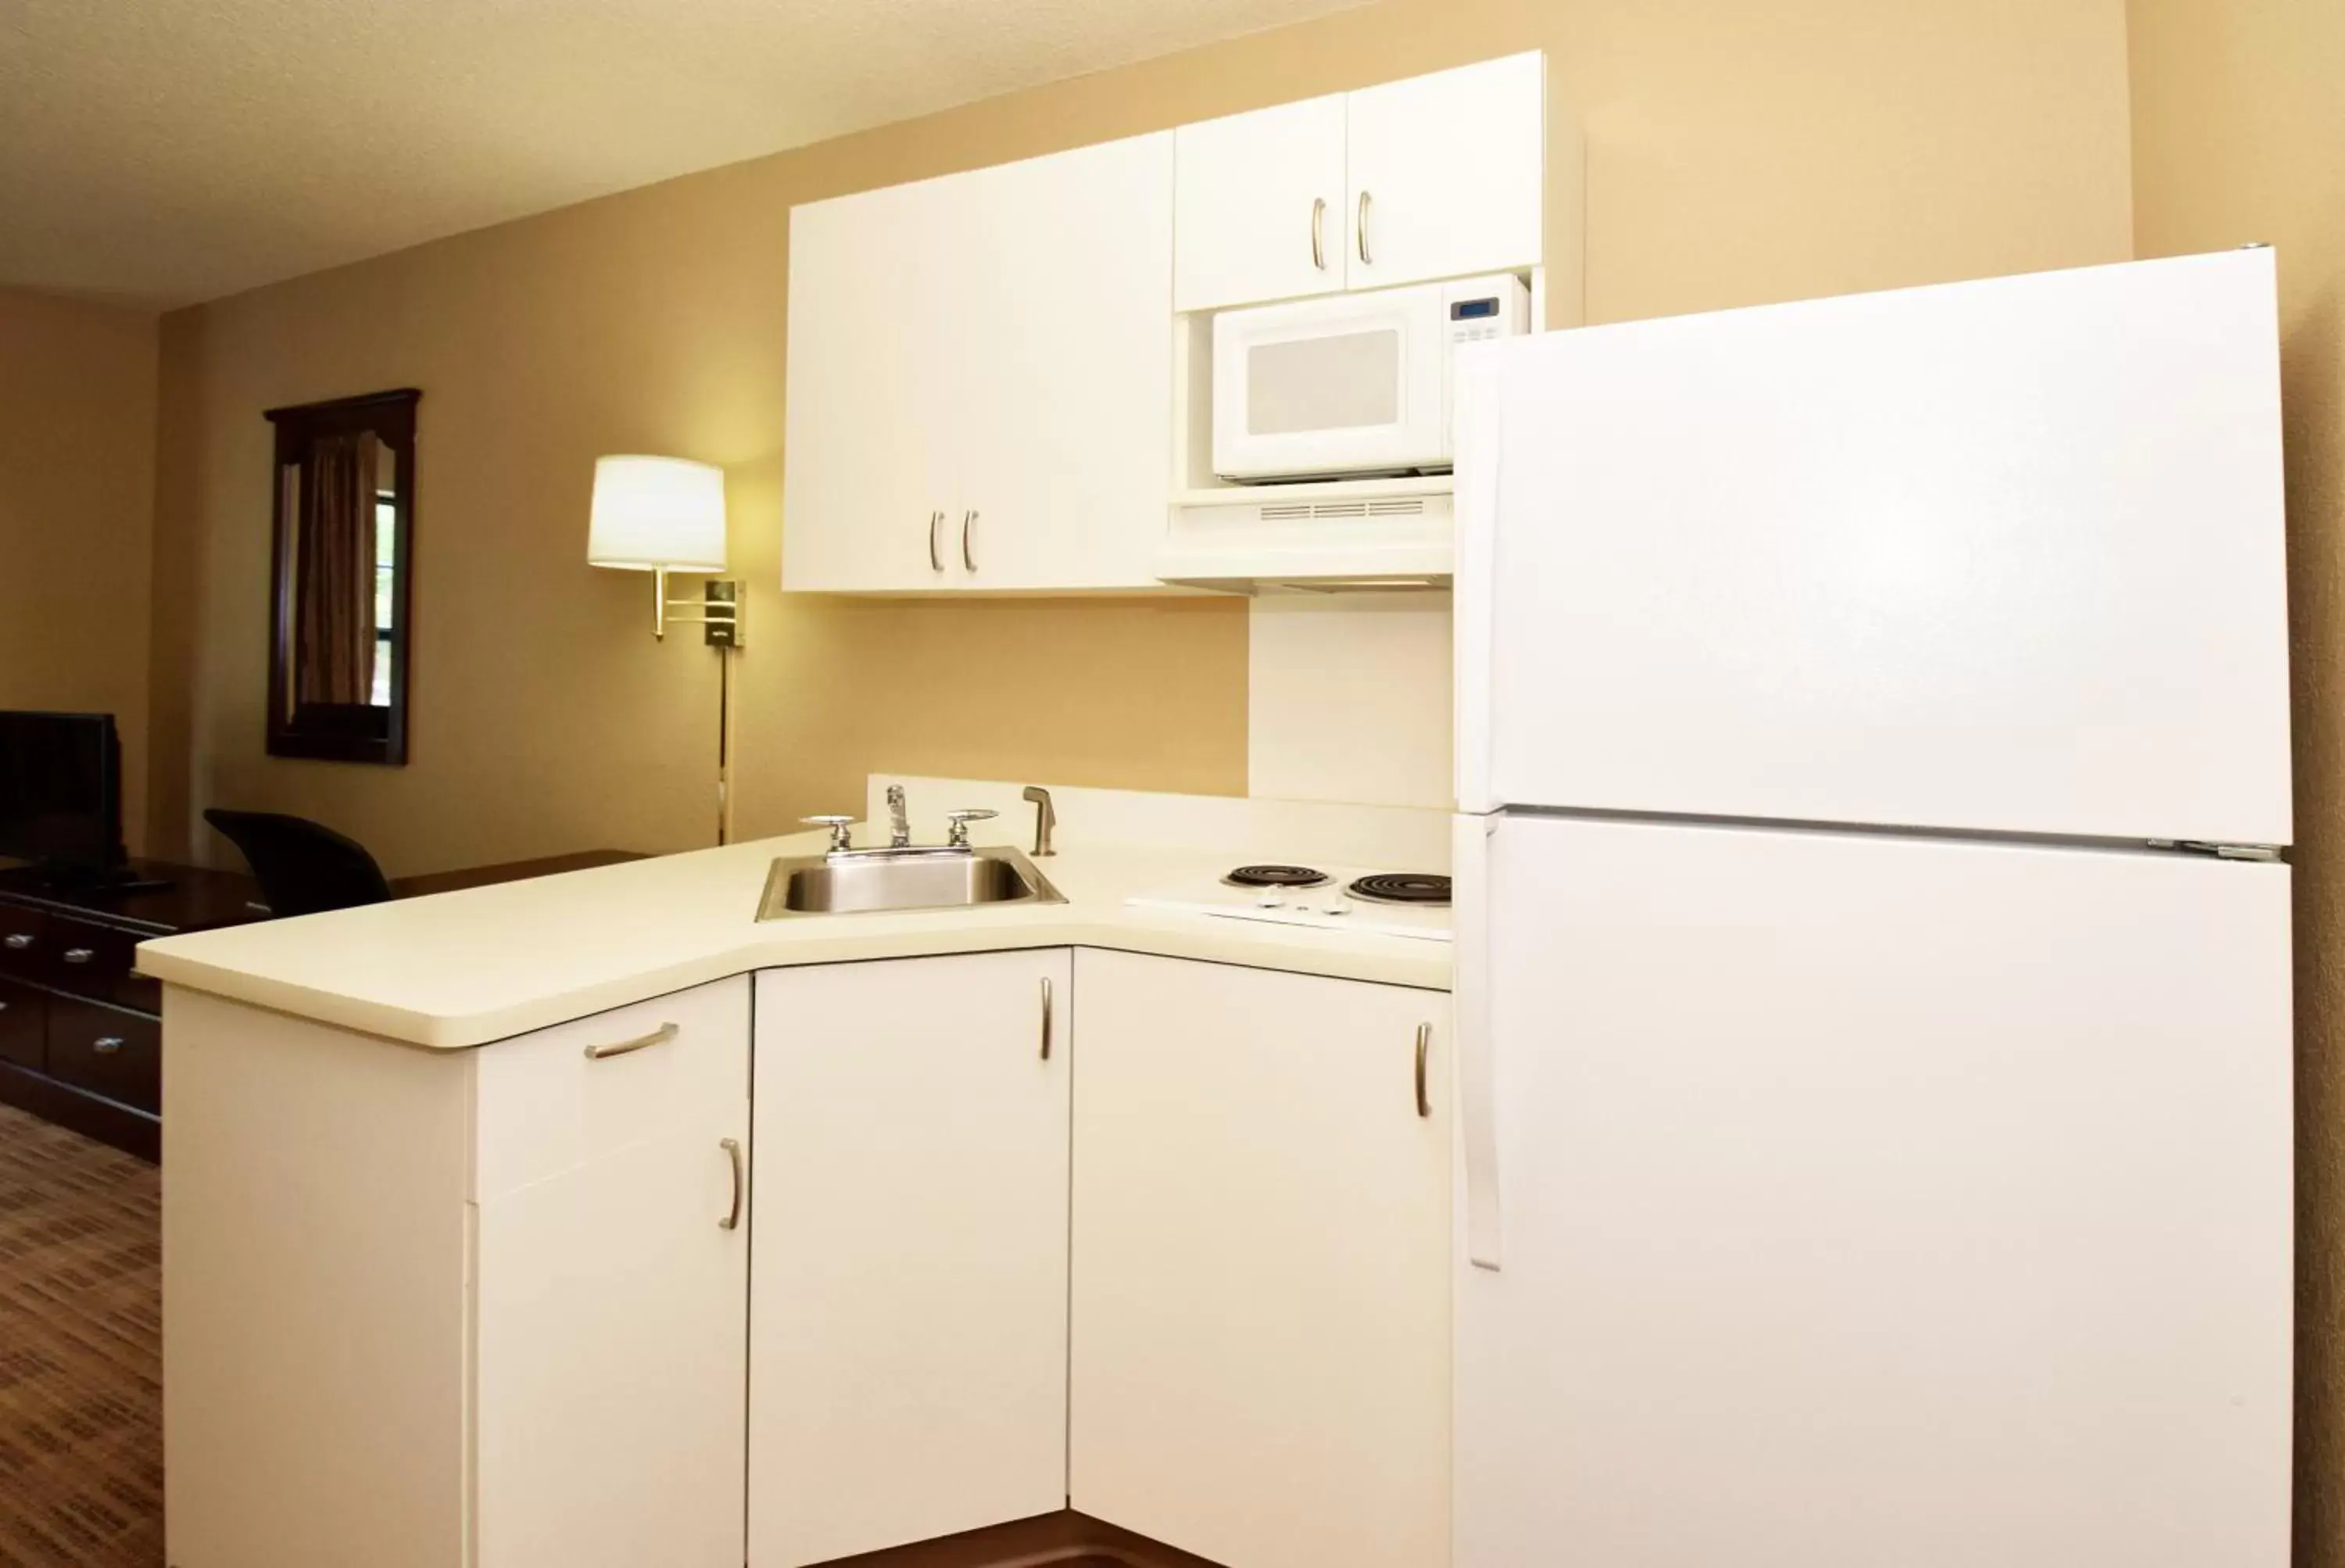 Kitchen or kitchenette, Kitchen/Kitchenette in Extended Stay America Suites - Baltimore - Timonium